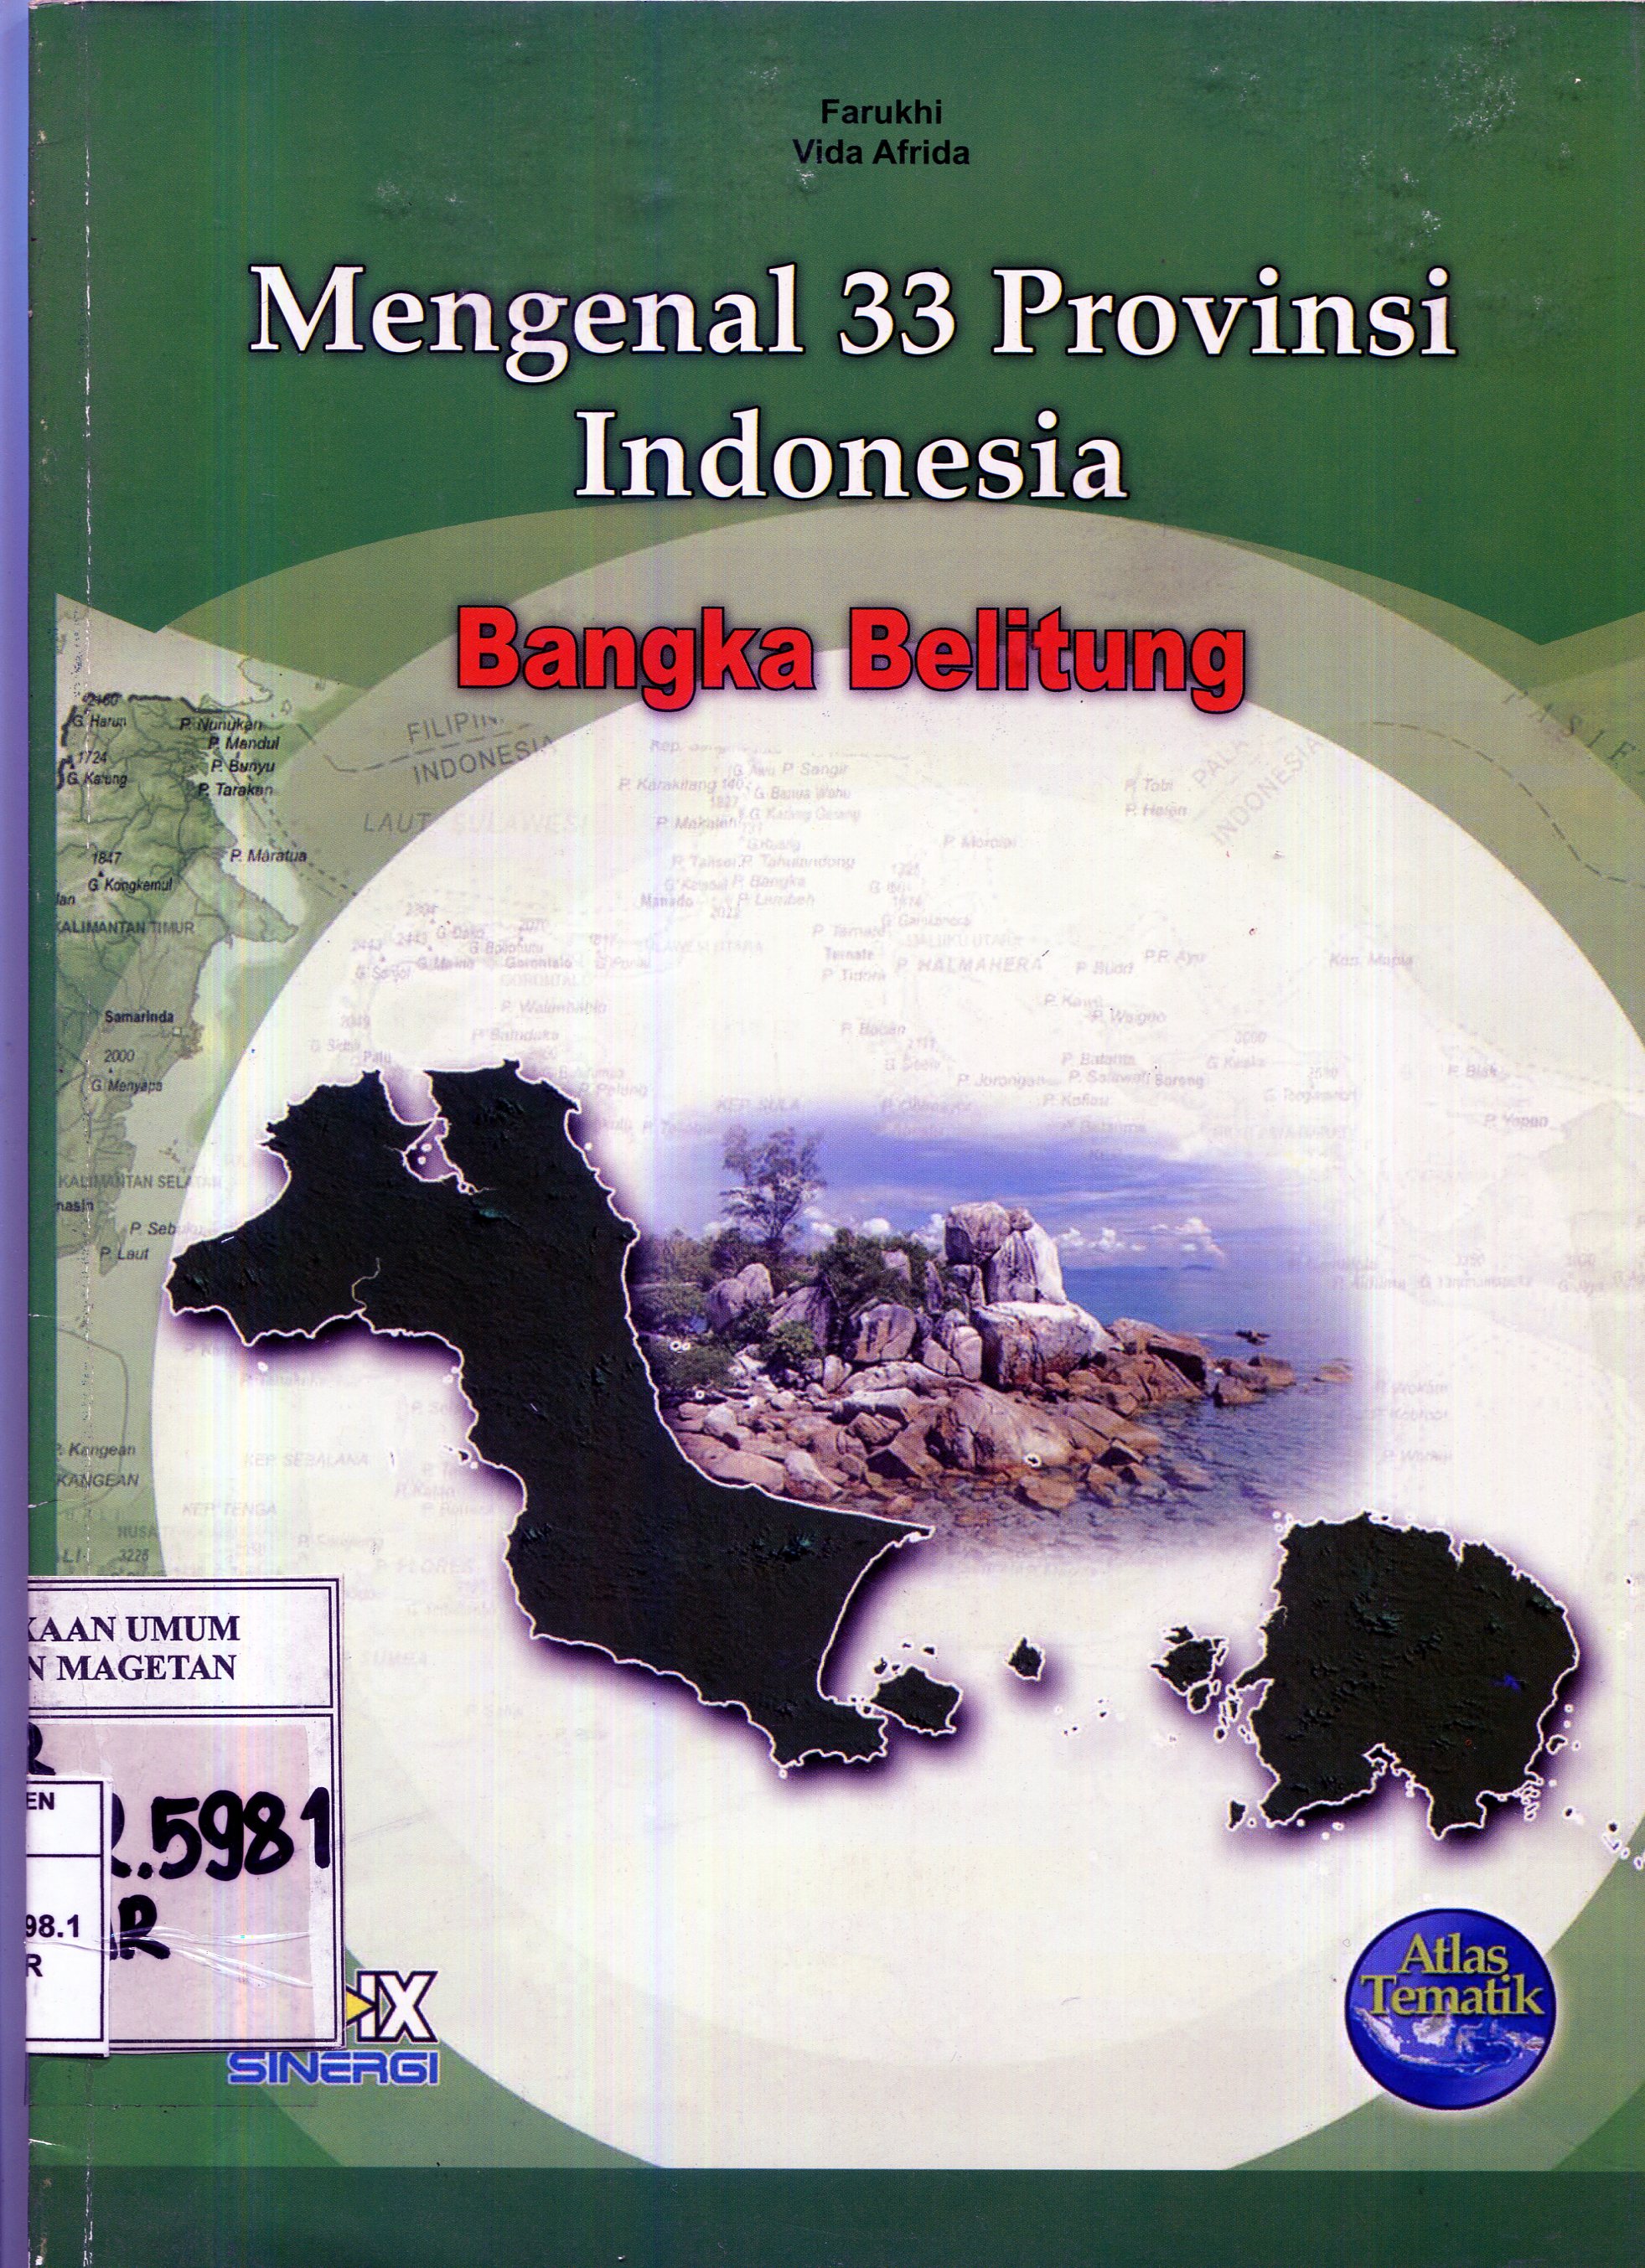 Mengenal 33 provinsi indonesia : bangka belitung